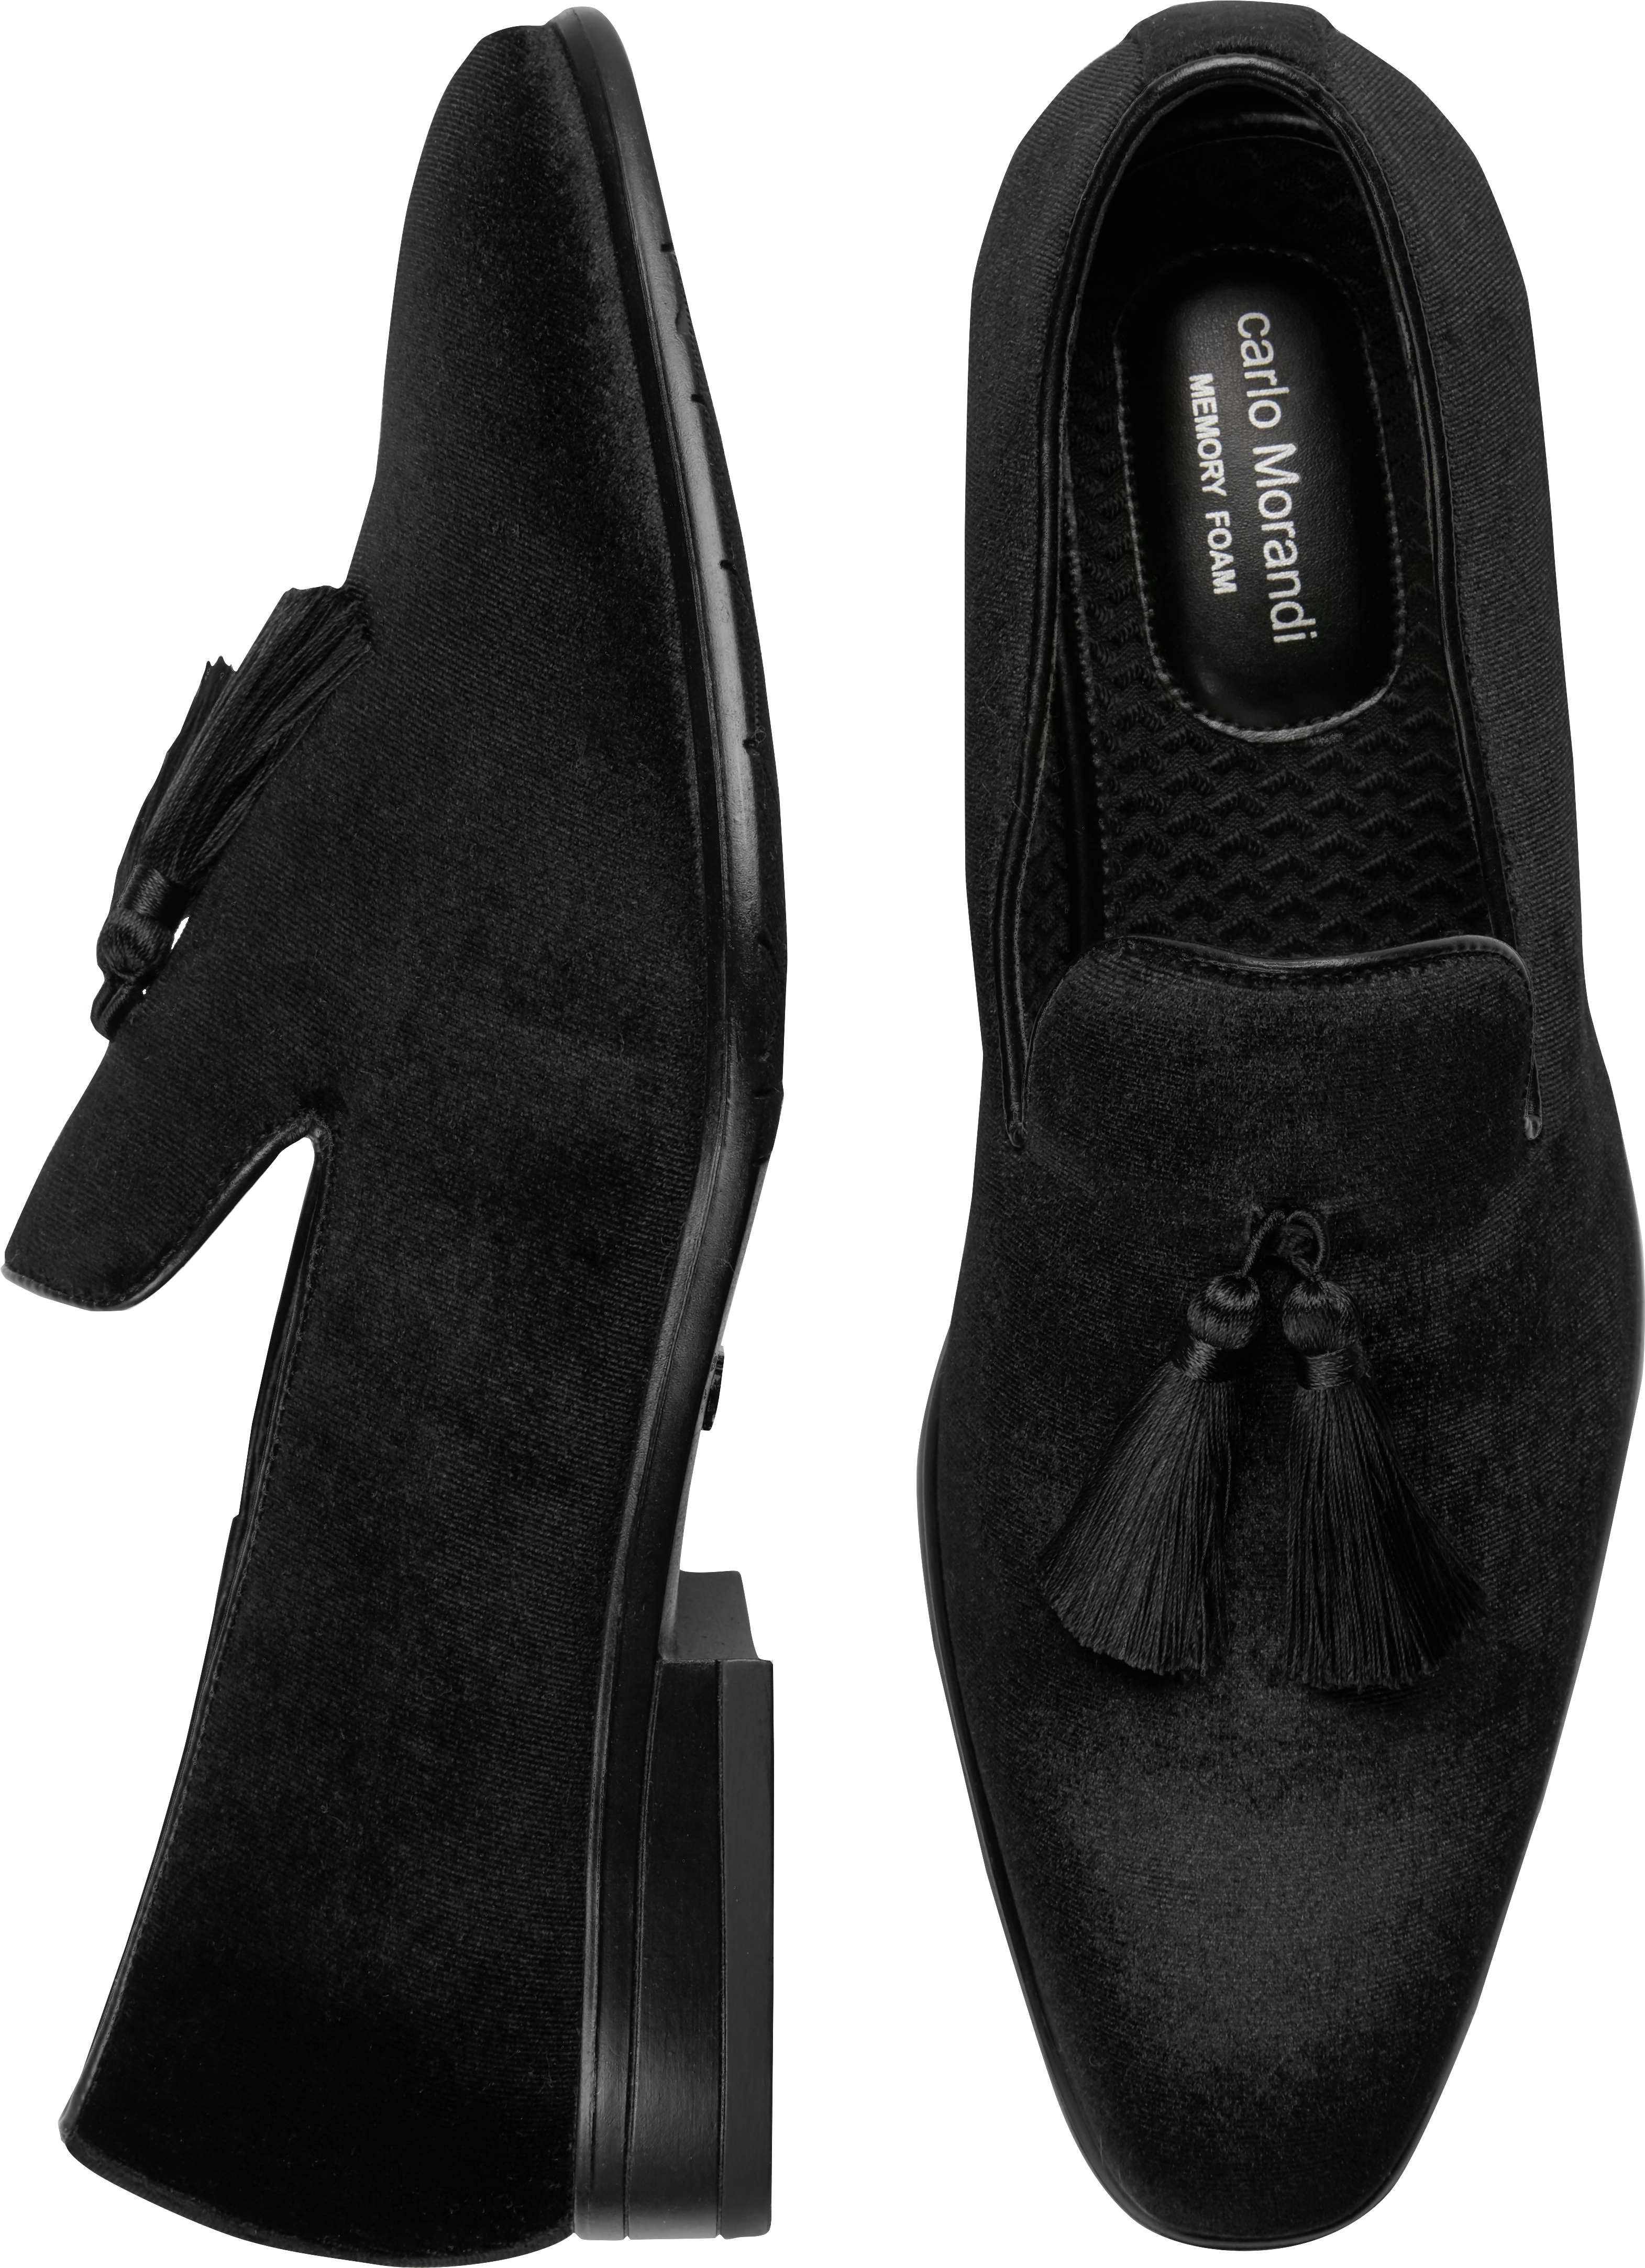 velvet black shoes